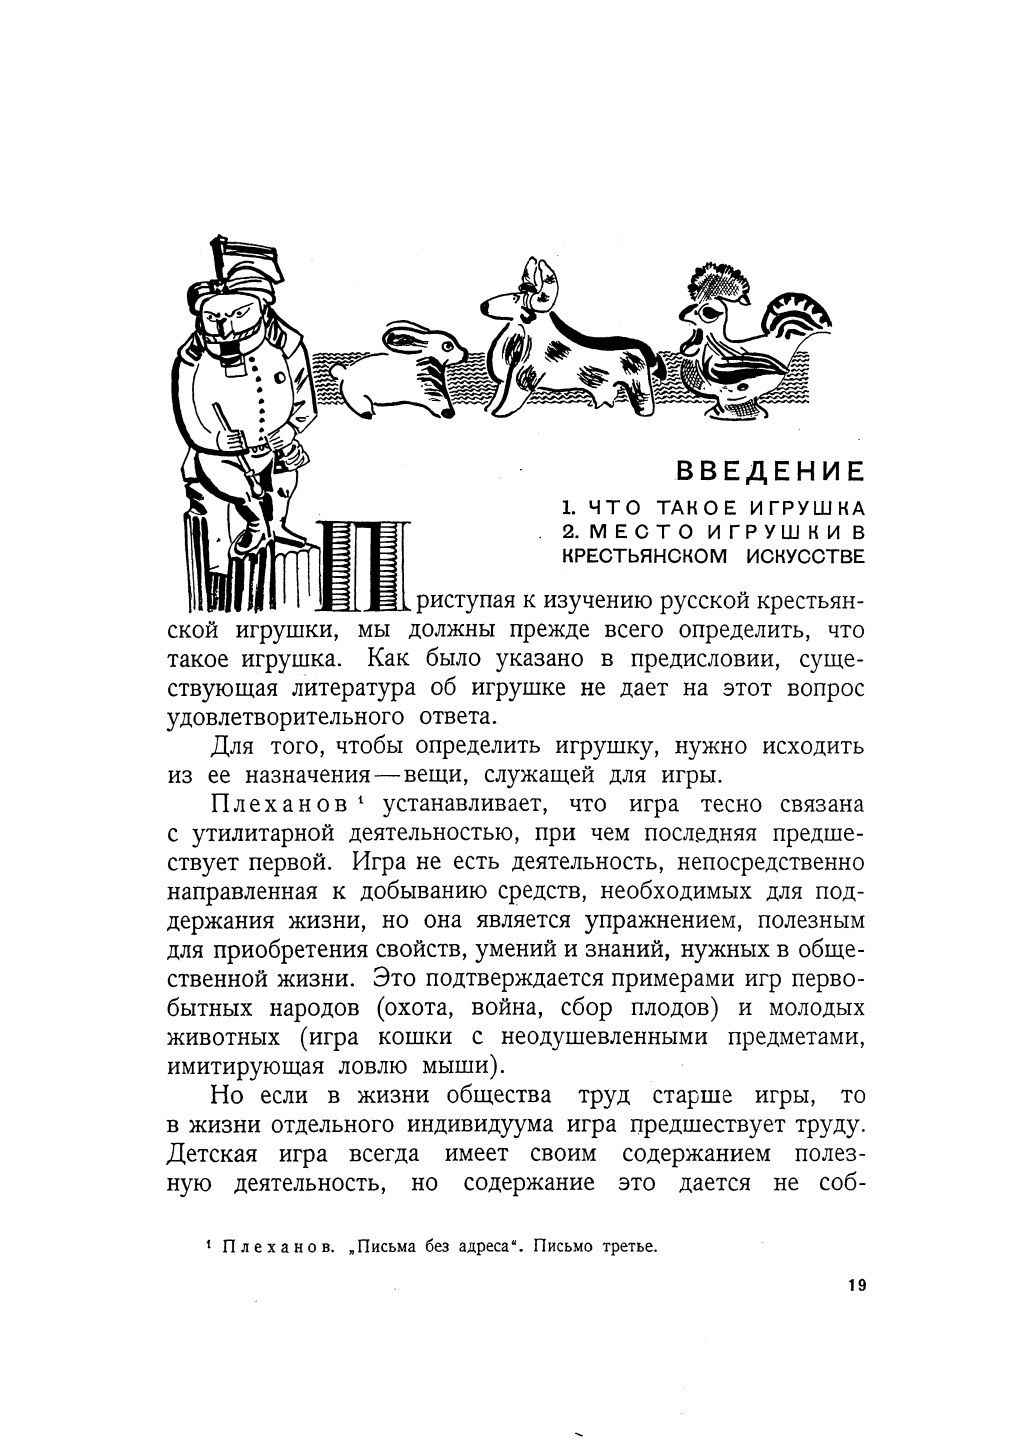 Русская крестьянская игрушка / Н. Церетелли. — [Москва] : Academia, 1933